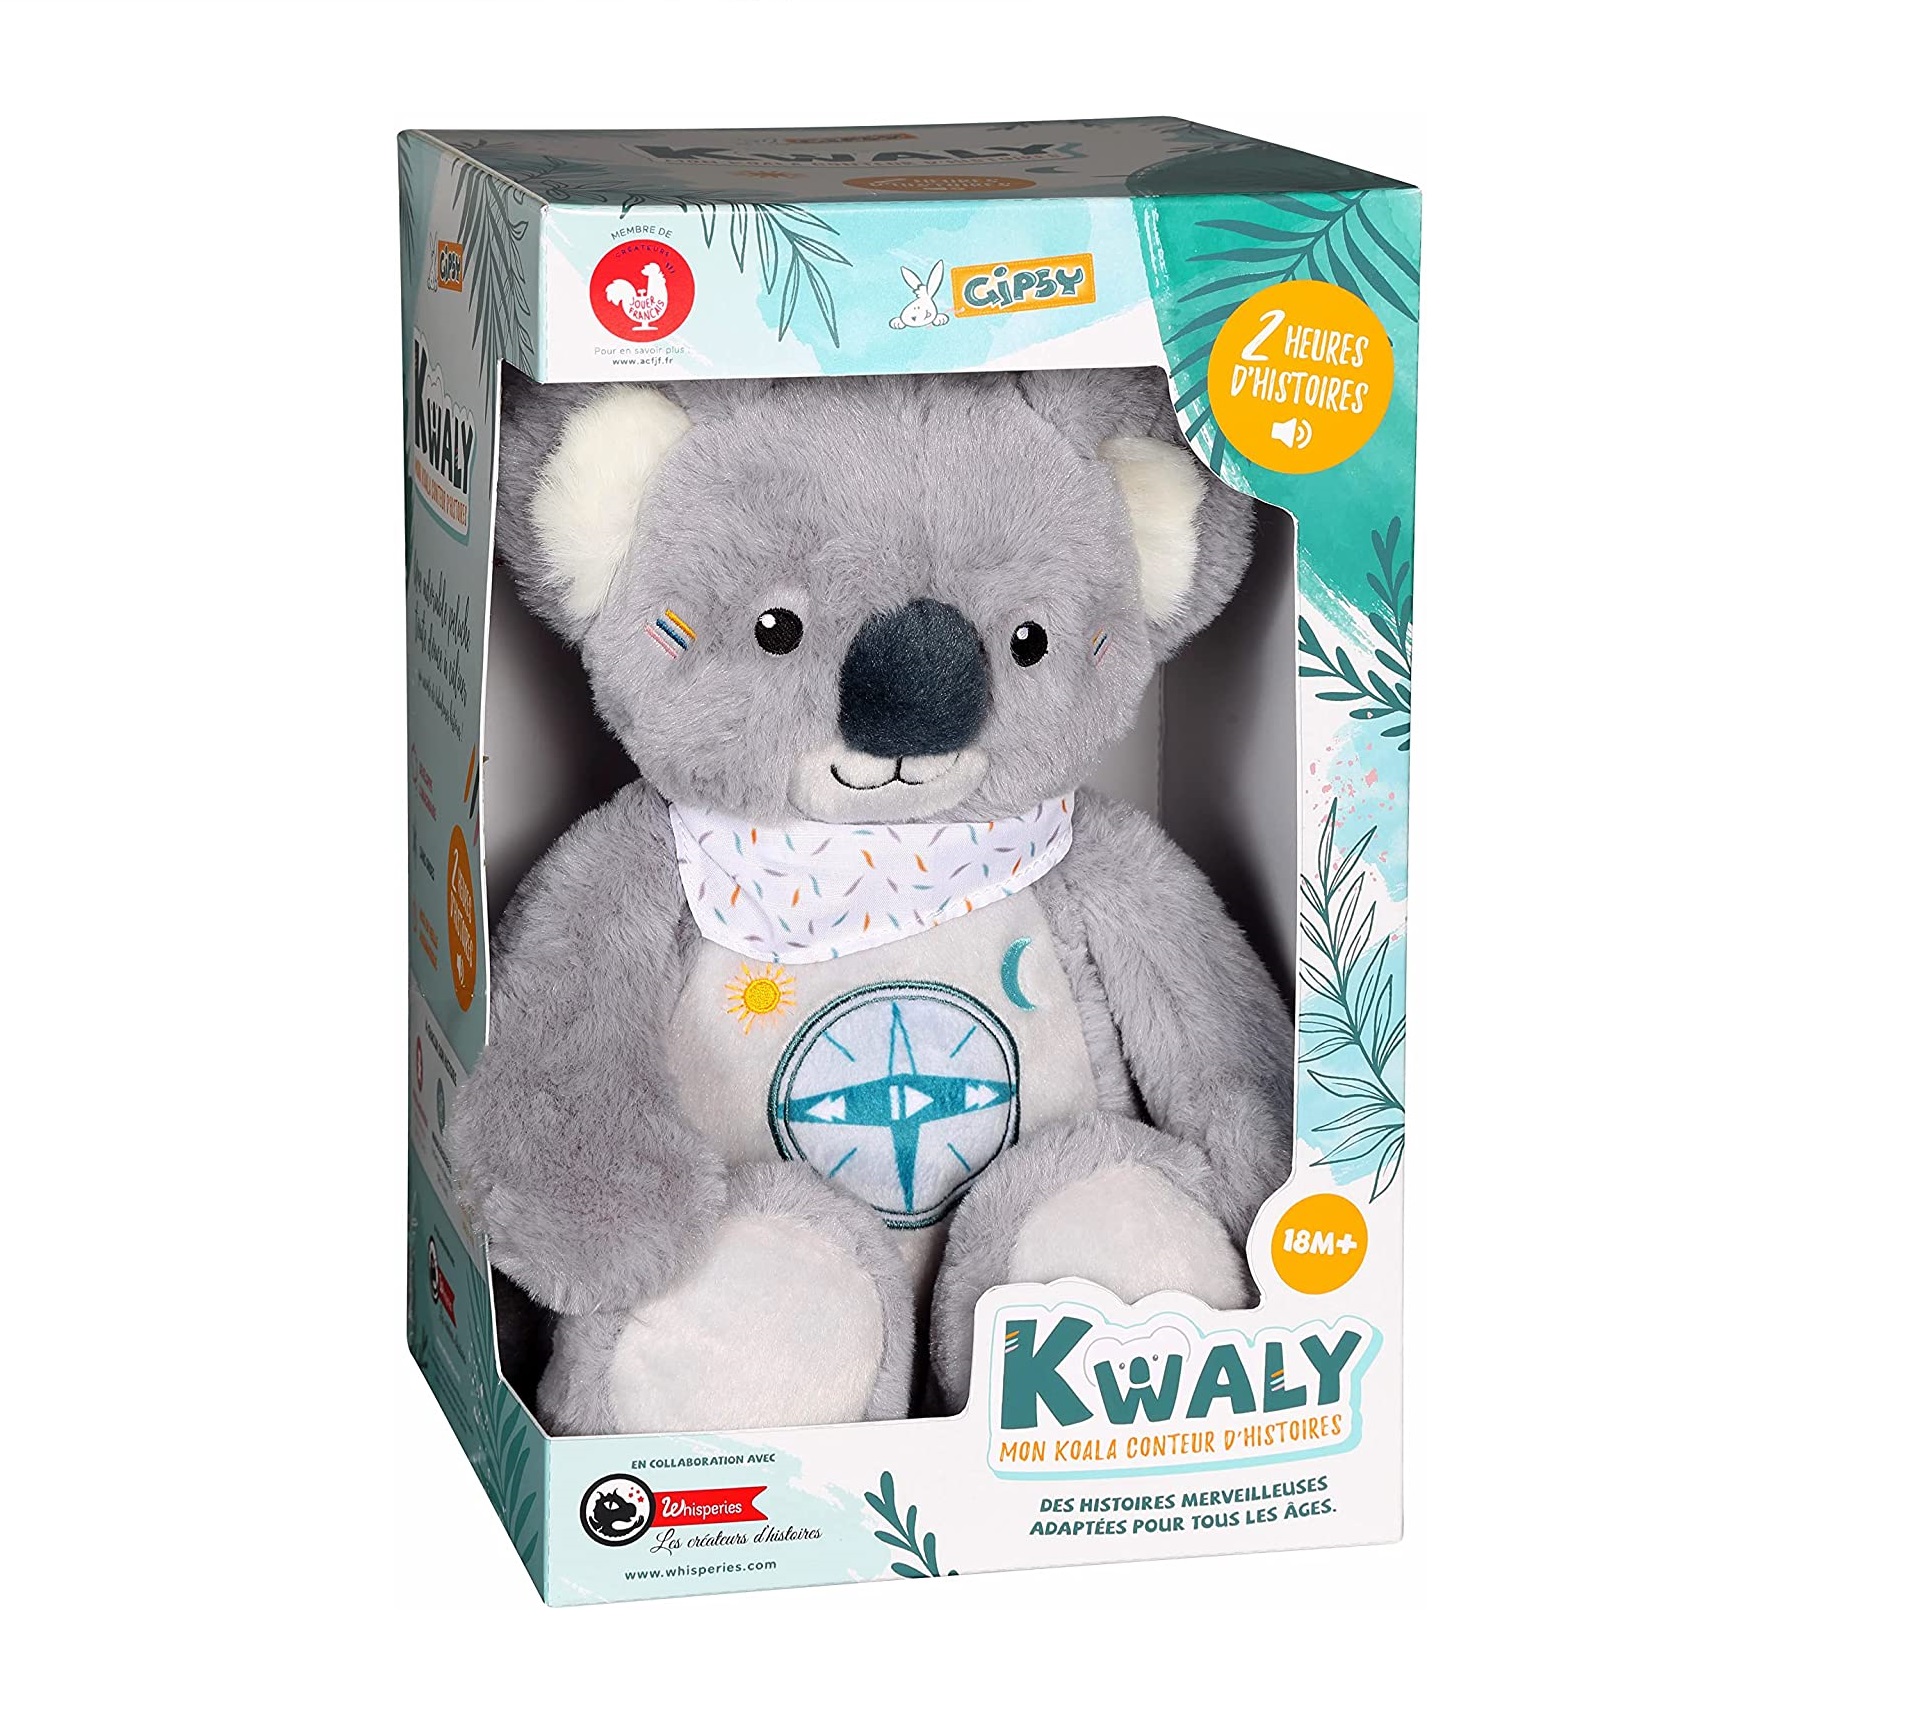 GIPSY TOYS - Peluche interactive - Kwaly koala conteur d'histoires - 2  heures de contes merveilleux pour enfants de 2 à 8 ans. - Boutique en ligne  100% fiable.